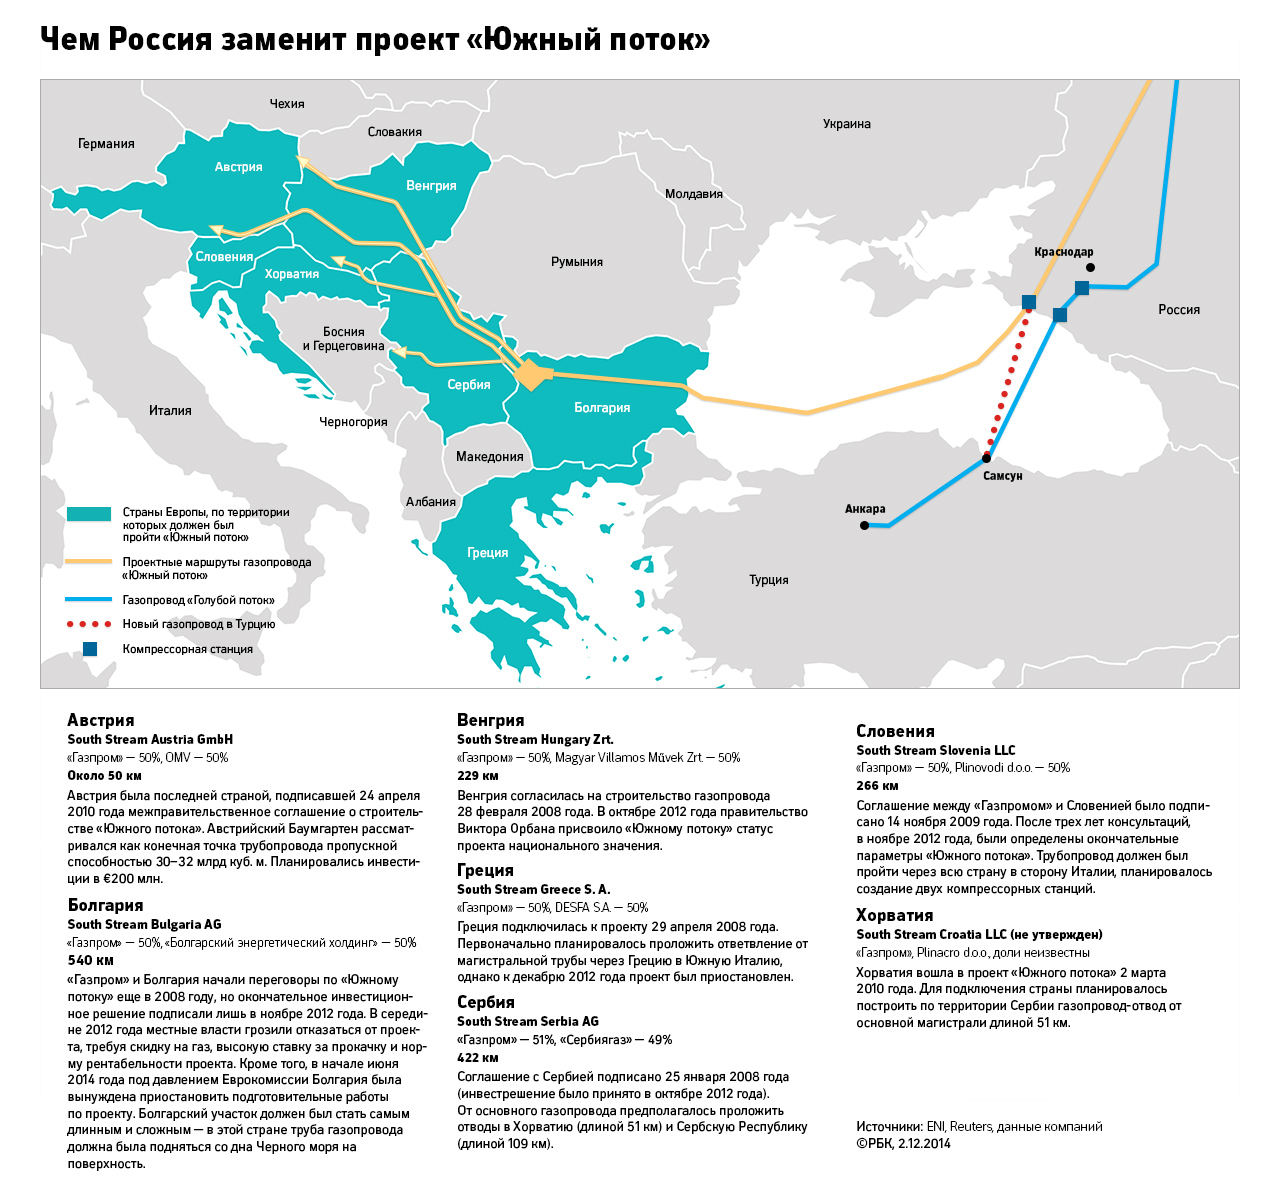 Ответвления газопровода. Южный поток Газпрома на карте. Южный поток газопровод на карте. Схема Южного потока газопровода на карте.